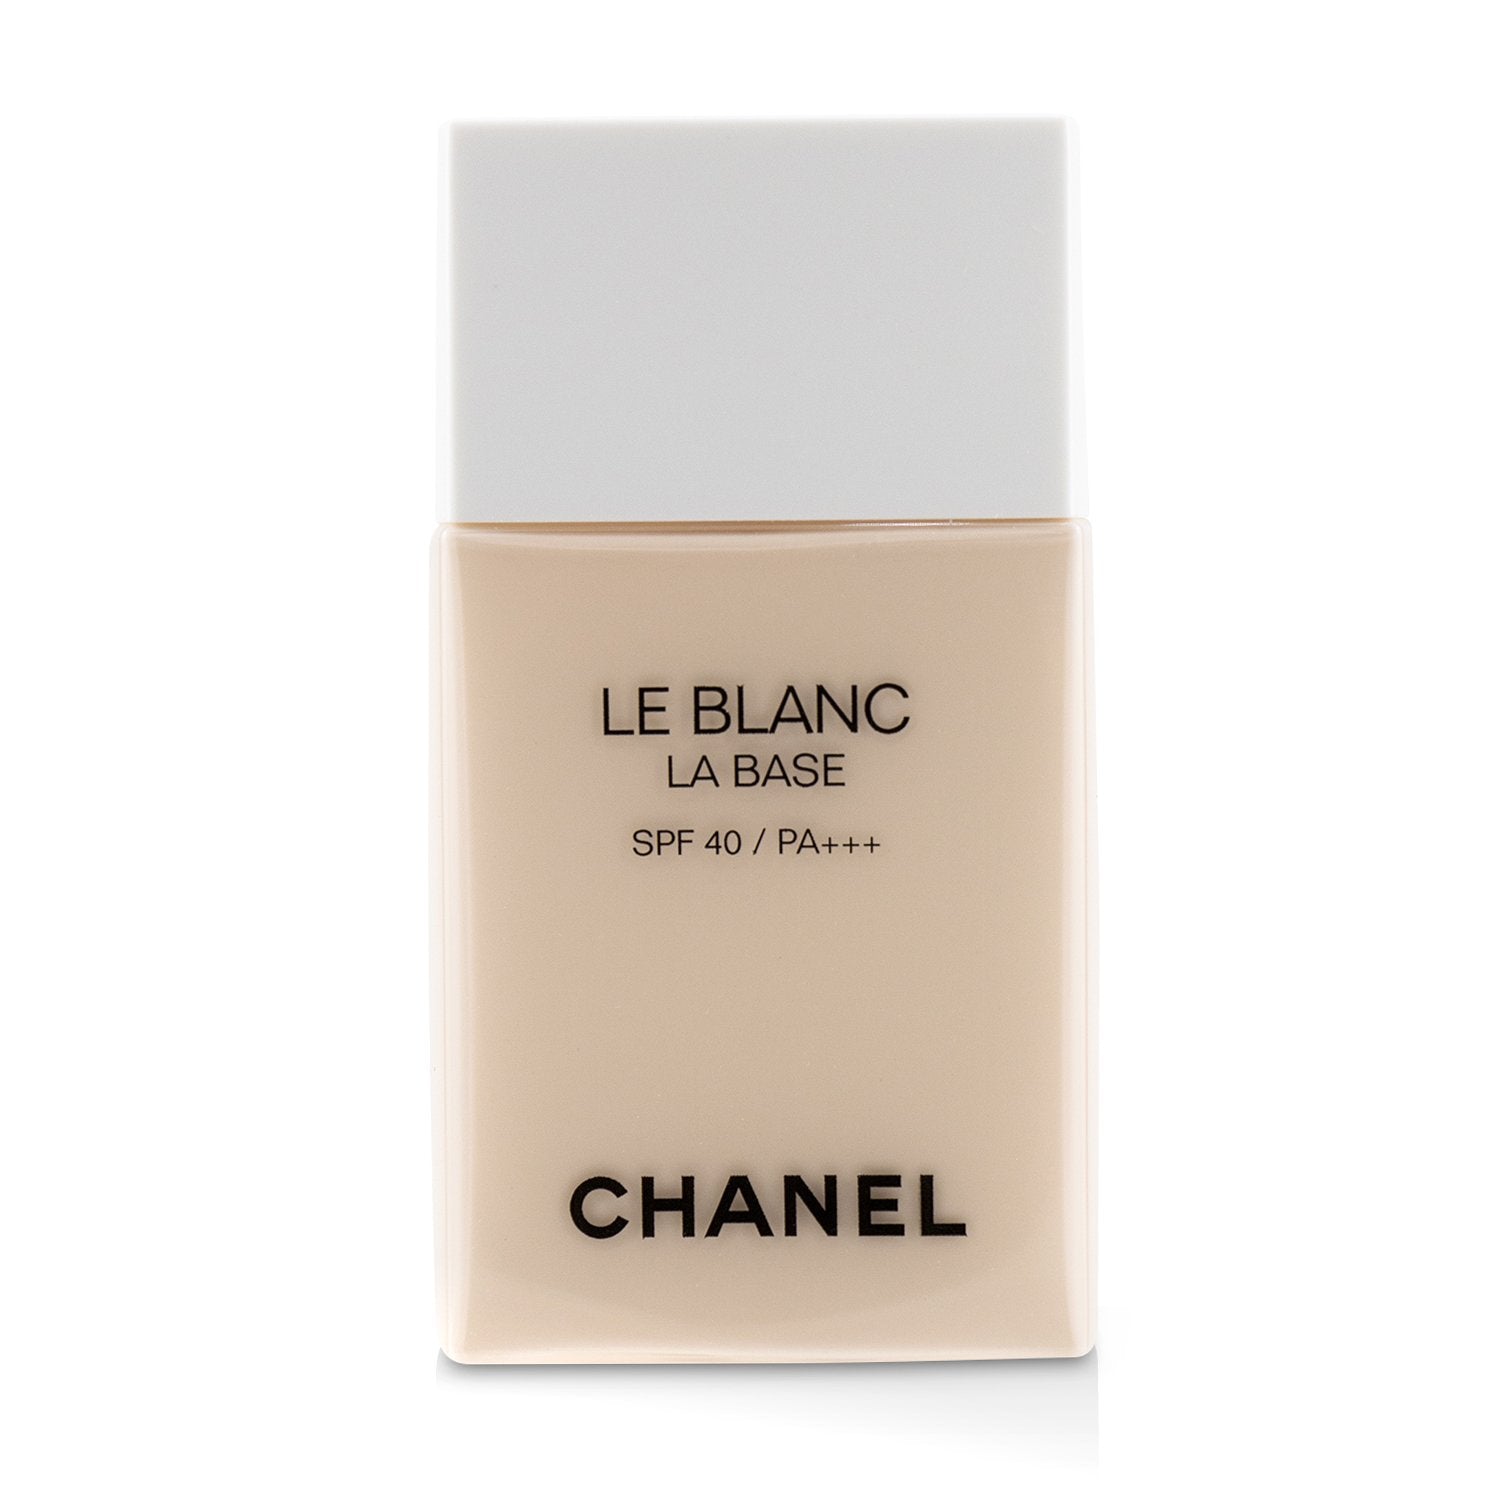 ส่งฟรี Chanel Le Blanc Foam Cleanser 150ml  มูสทำความสะอาดผิวหน้าอันแสนผ่อนคลายและเนื้อโฟมอันเข้มข้น - MJ Shop :  Inspired by LnwShop.com